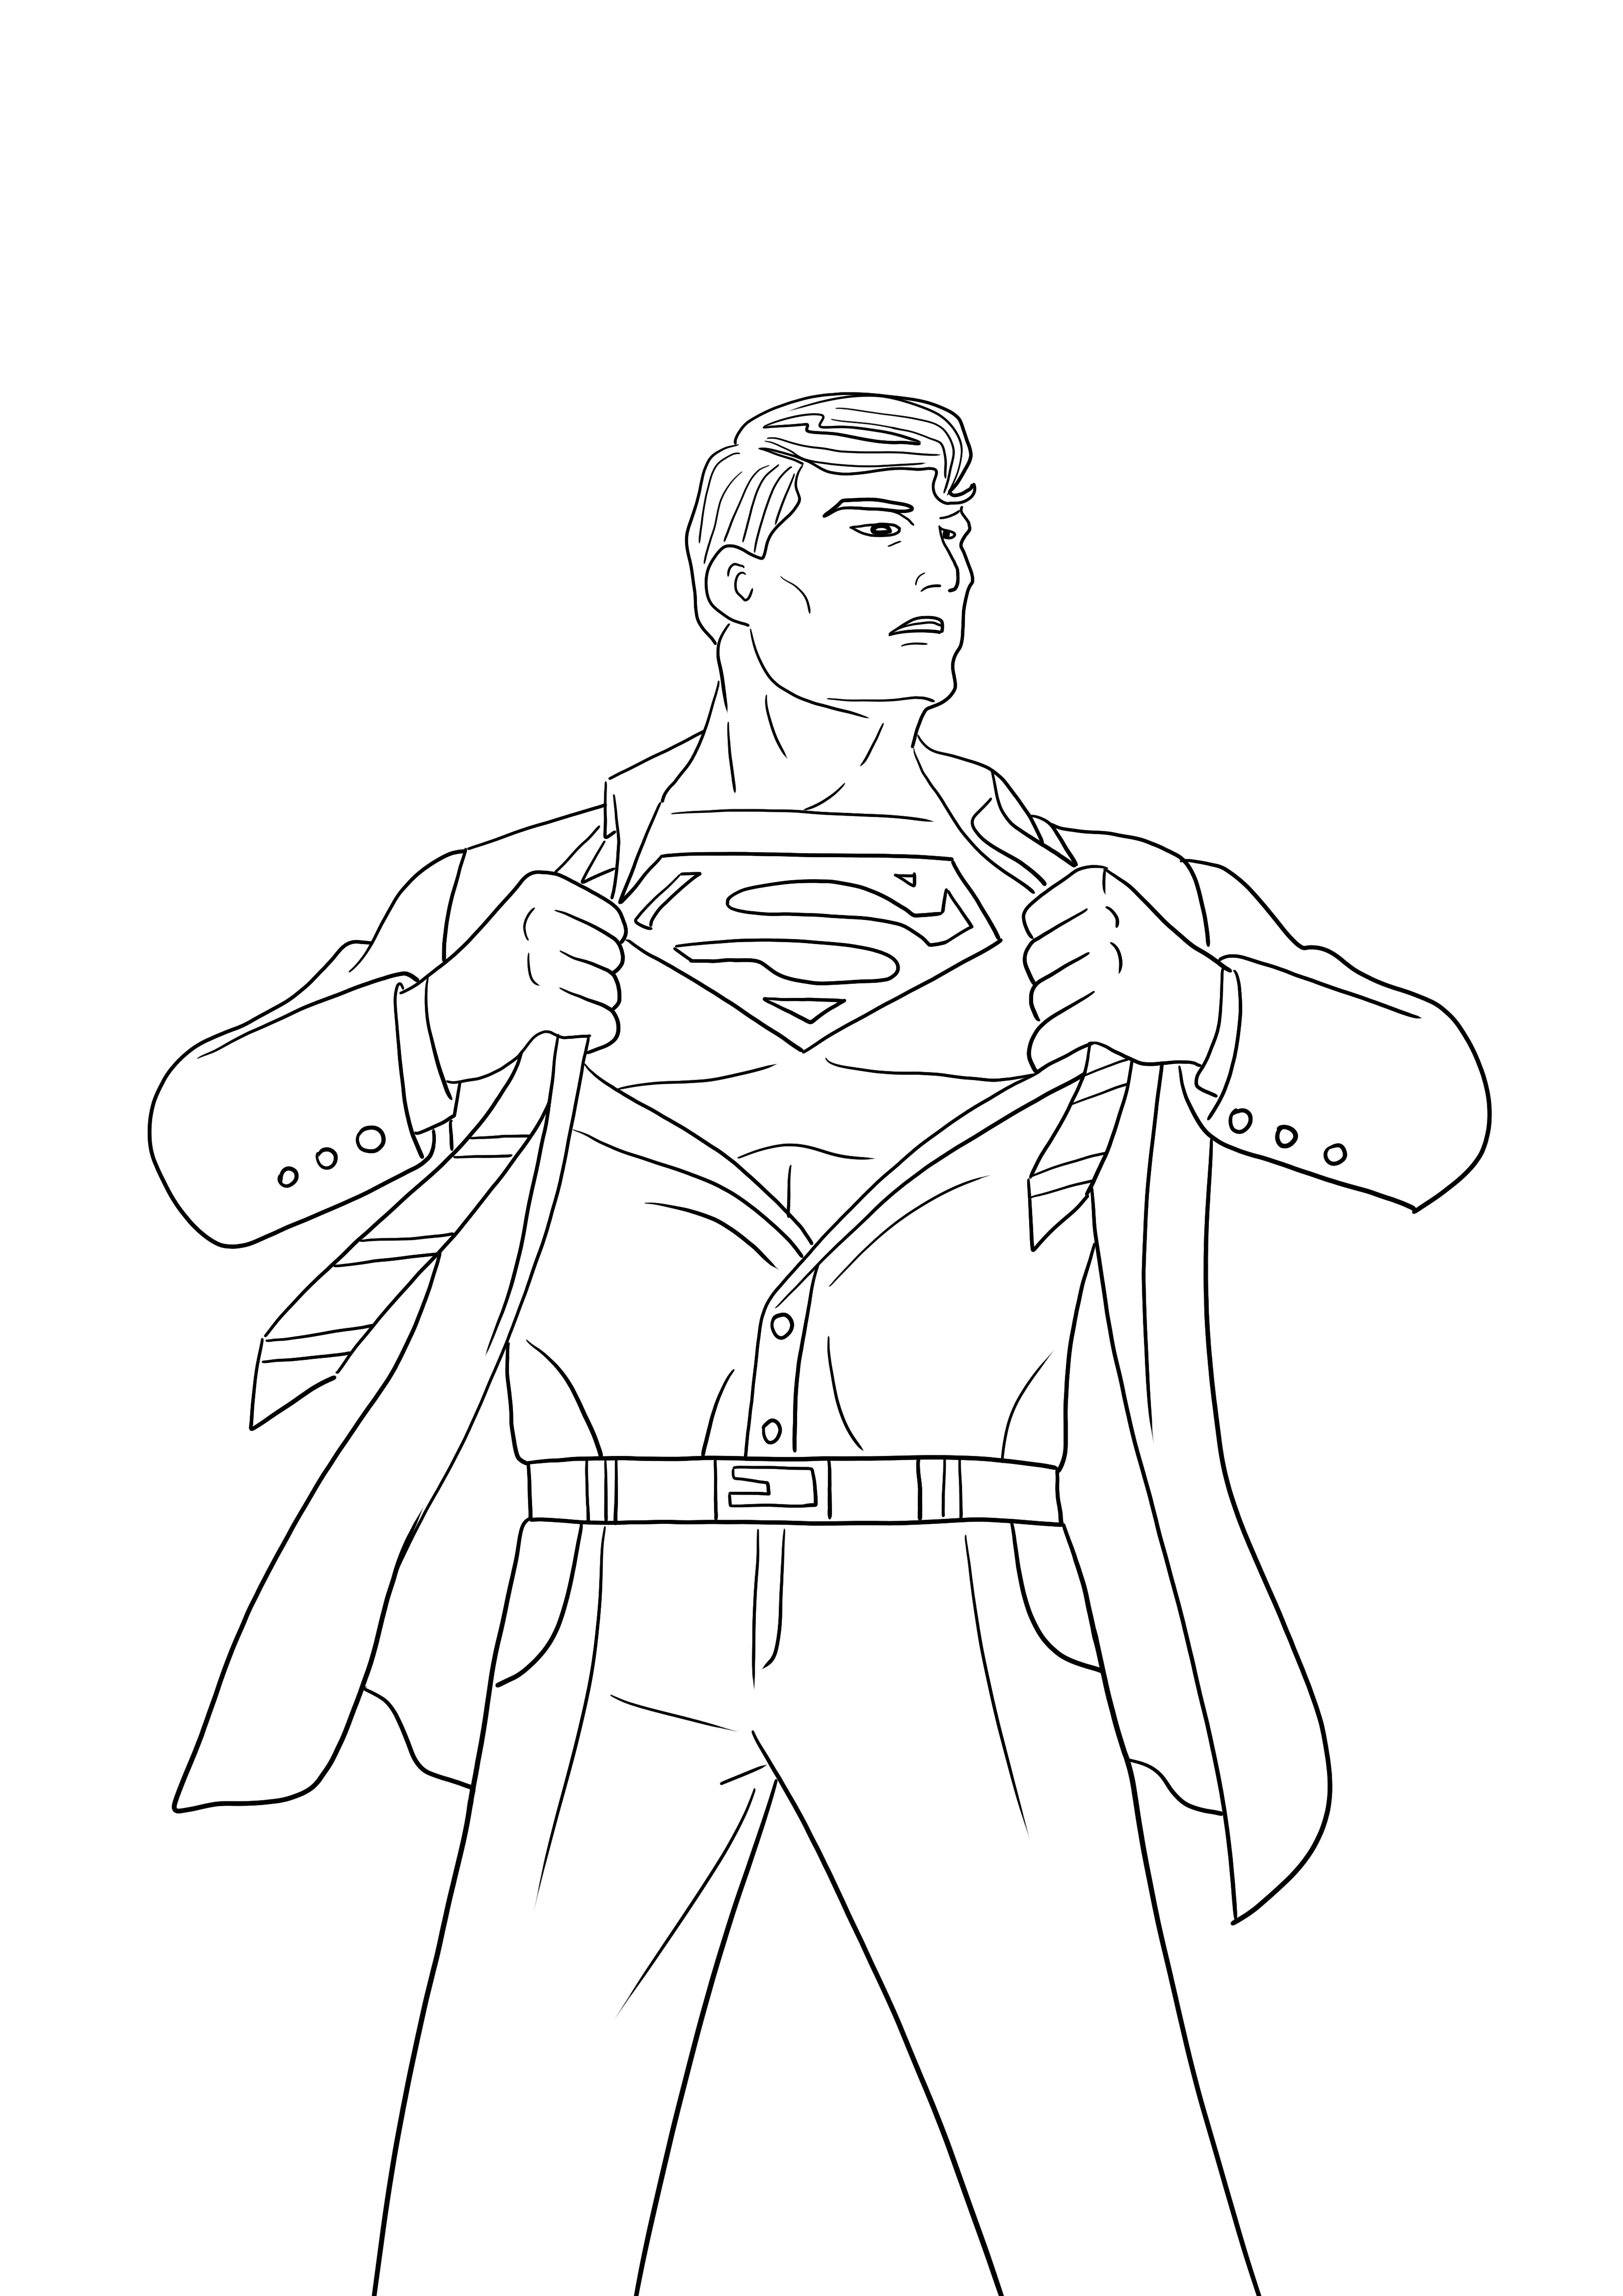 Superman está revelando su identidad Imagen para imprimir y colorear gratis